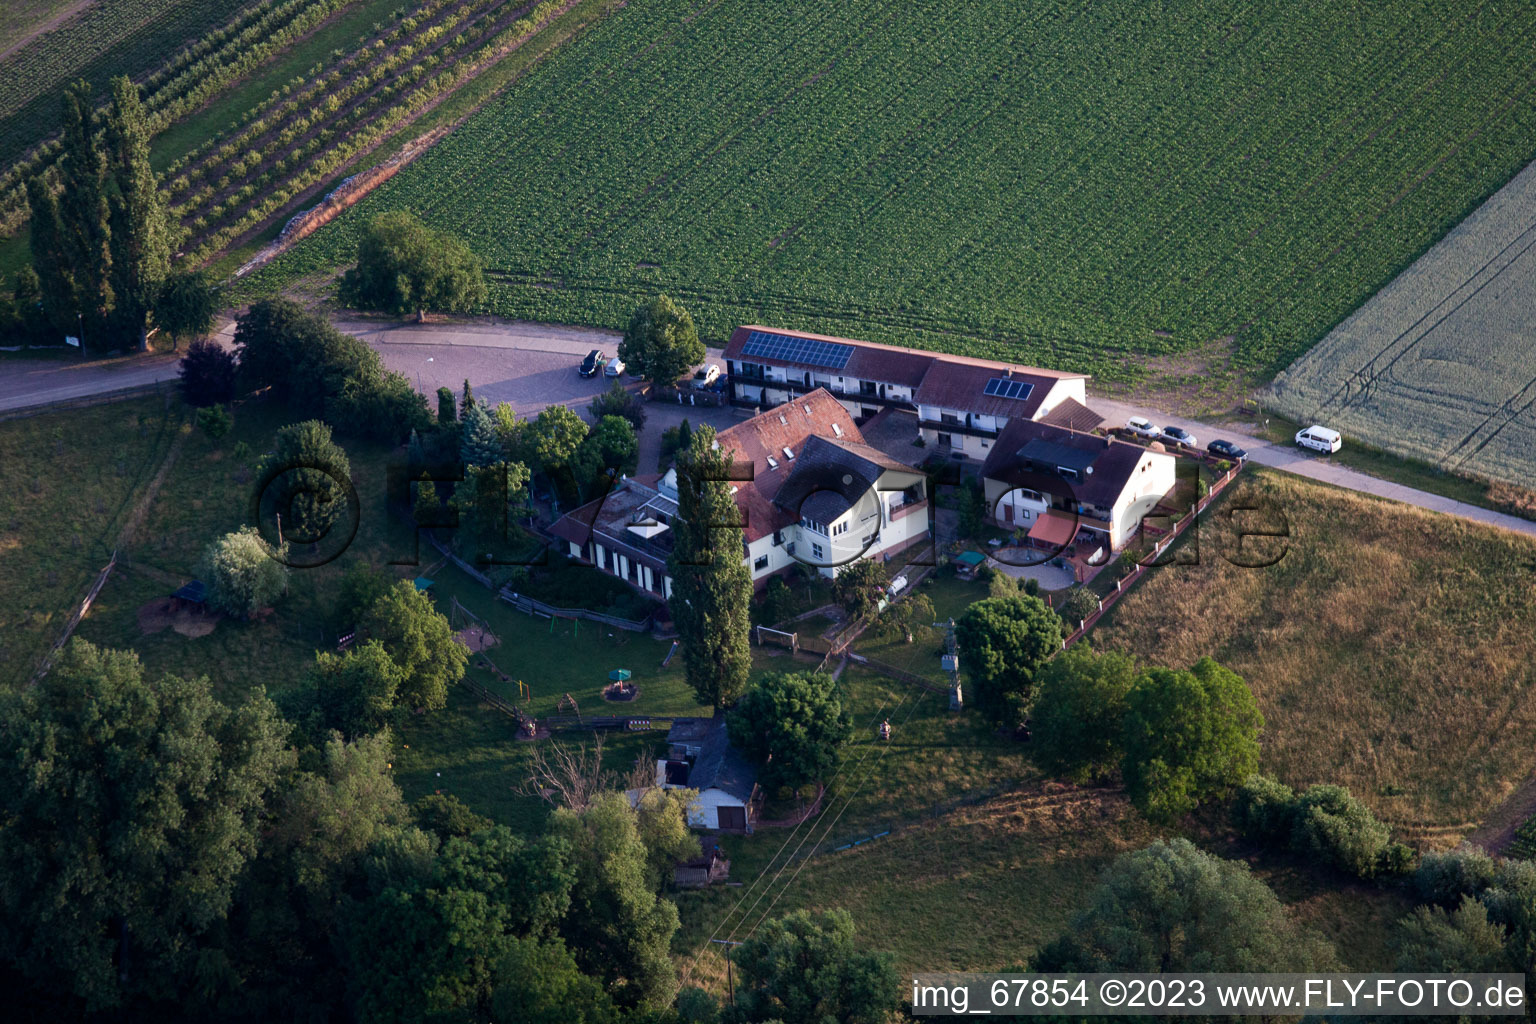 Aerial view of Mühlengrund restaurant in the district Heuchelheim in Heuchelheim-Klingen in the state Rhineland-Palatinate, Germany